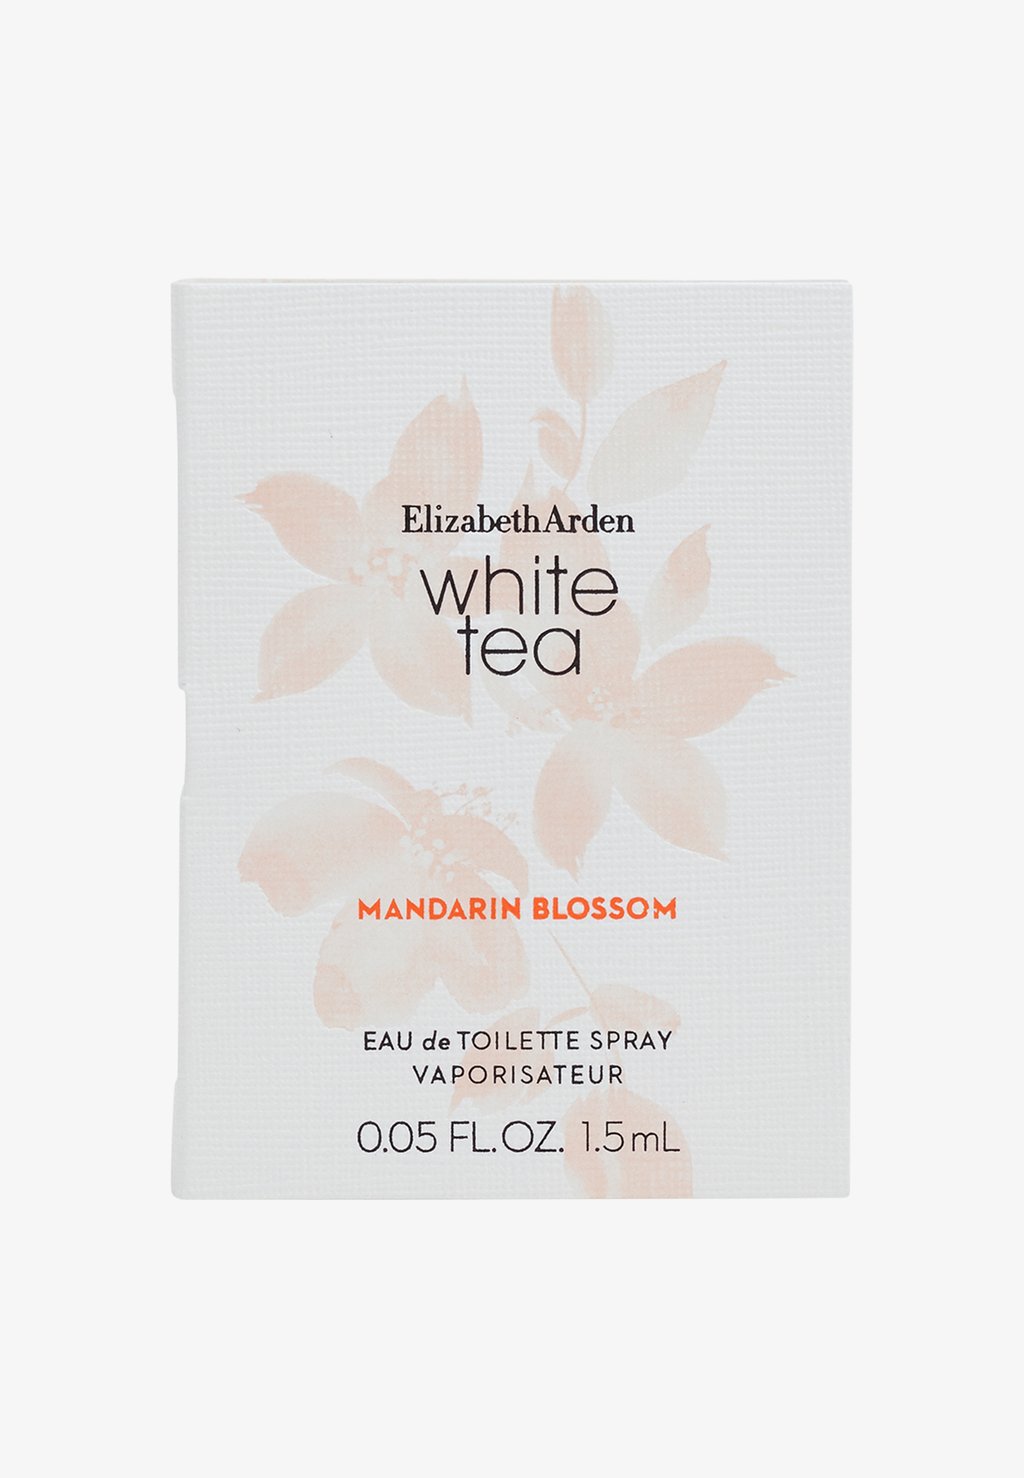 Туалетная вода White Tea Mandarin Blossom Edt Elizabeth Arden white tea mandarin blossom туалетная вода 100мл